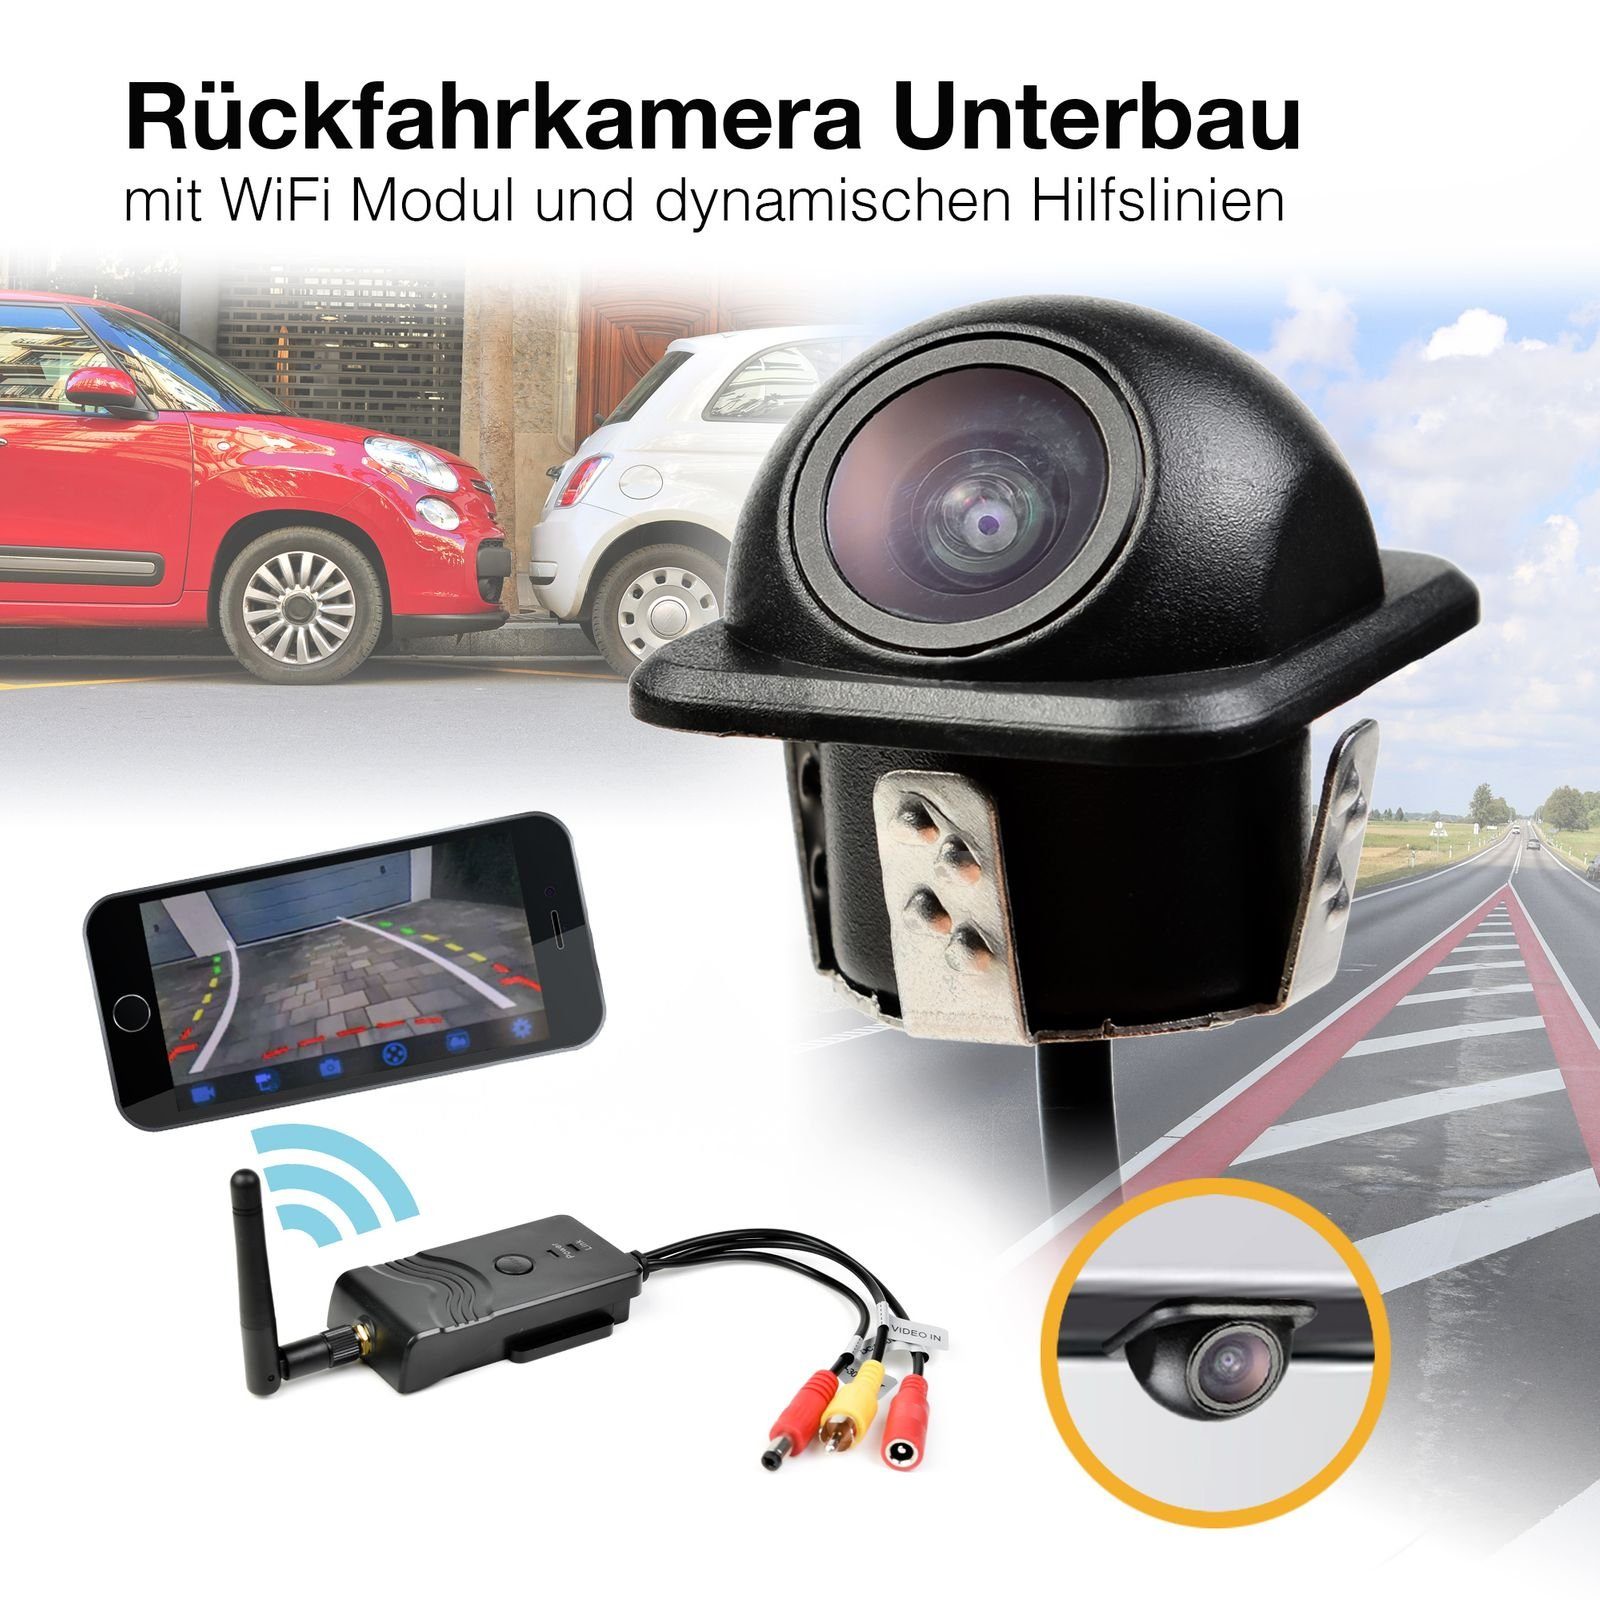 CARMATRIX CM-1111 Rückfahrkamera (Auto WLAN Rückfahrsystem Funk  Einparkhilfe HD Rückfahrkamera, im Nummernschild mit App)